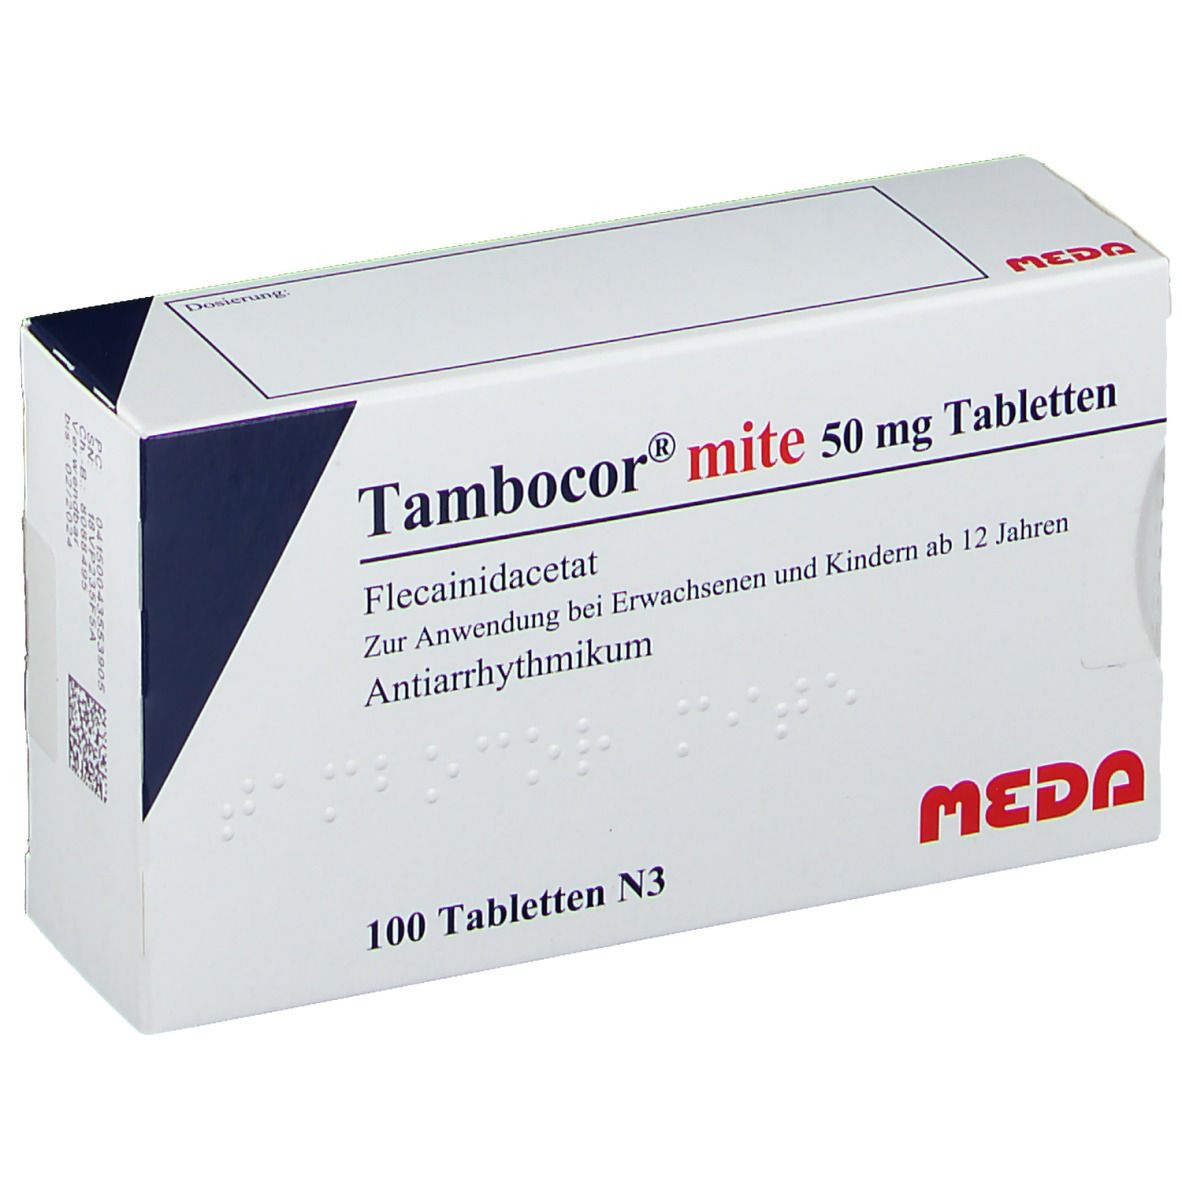 Tambocor® mite 50 mg